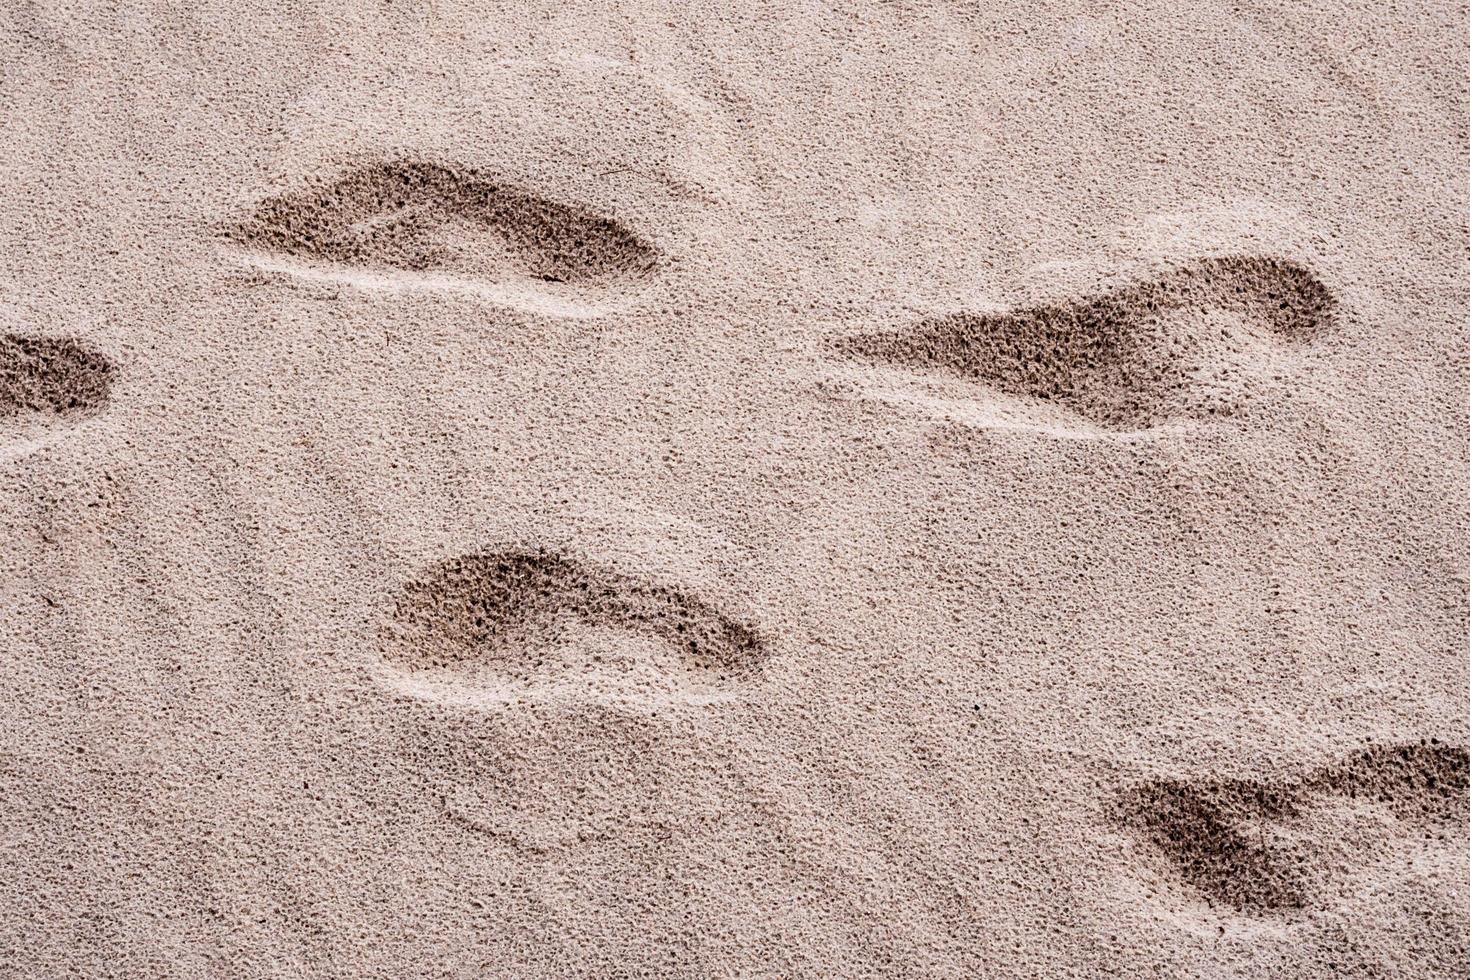 pozzi sulla sabbia, causati dalle impronte delle persone foto